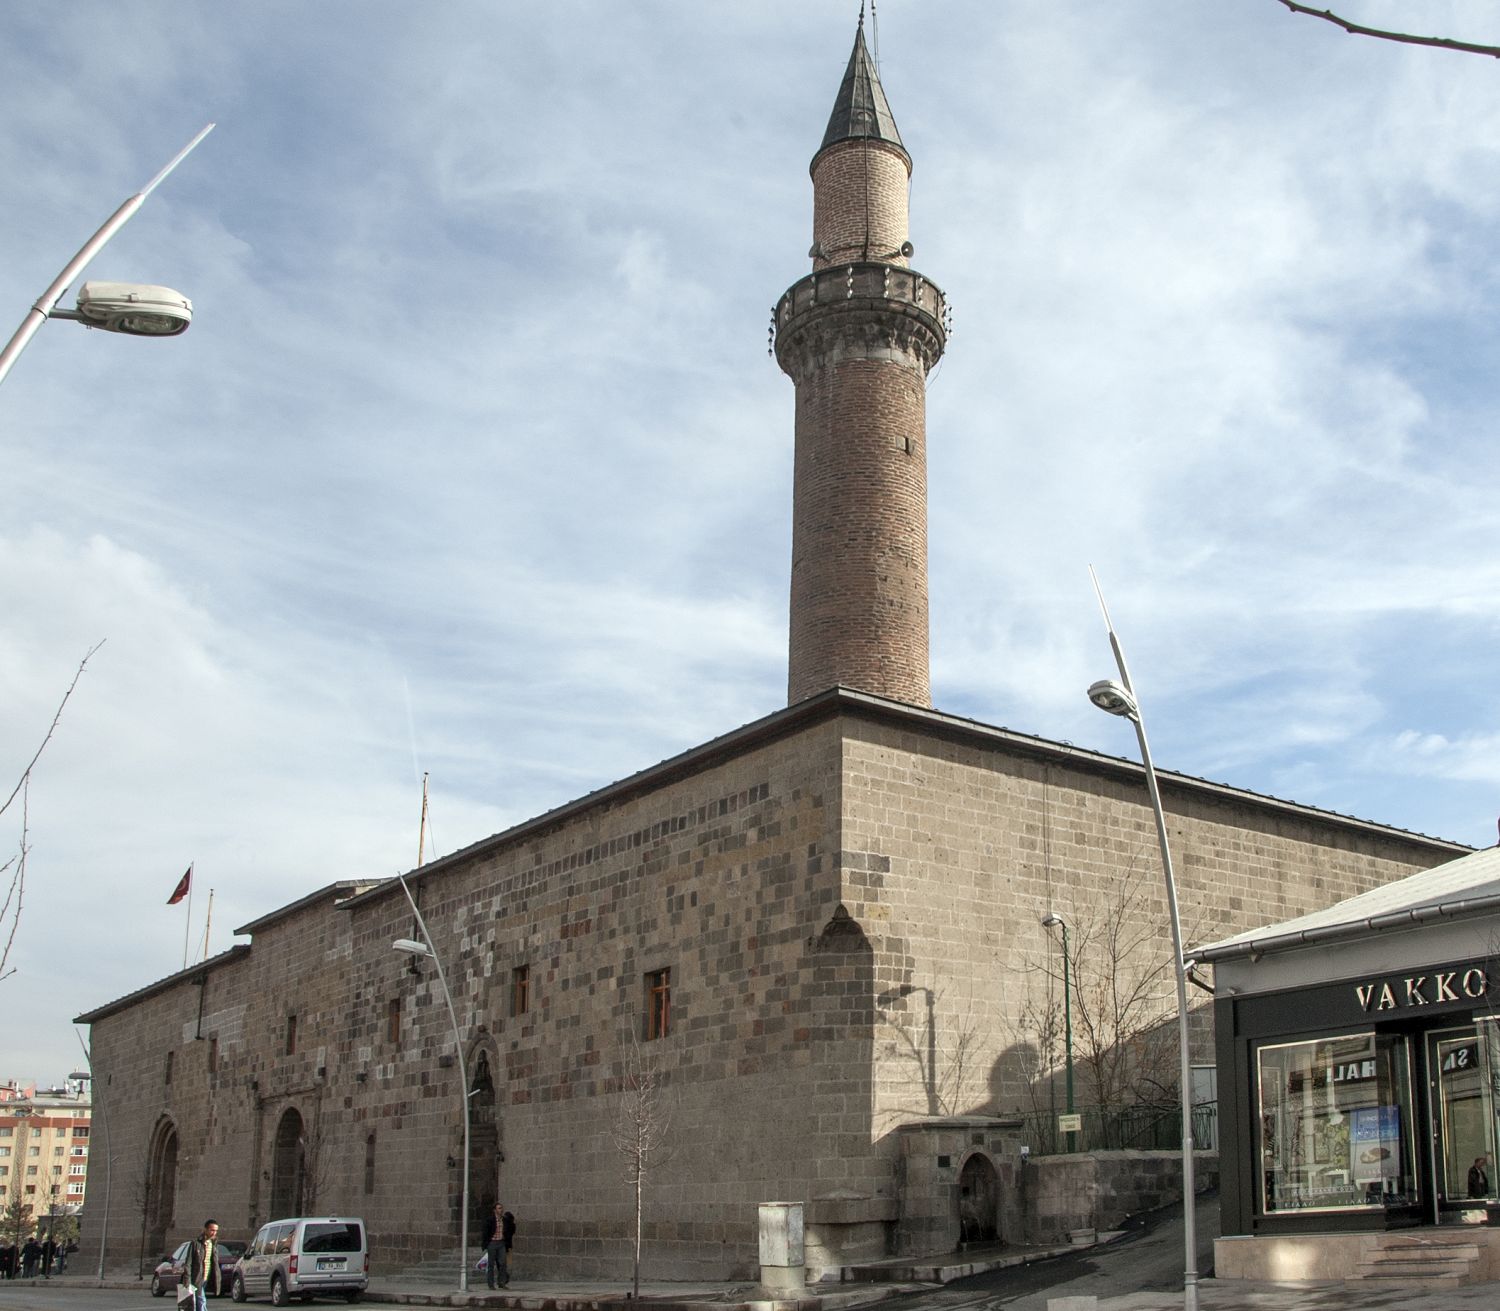 Erzurum Ulu Camii